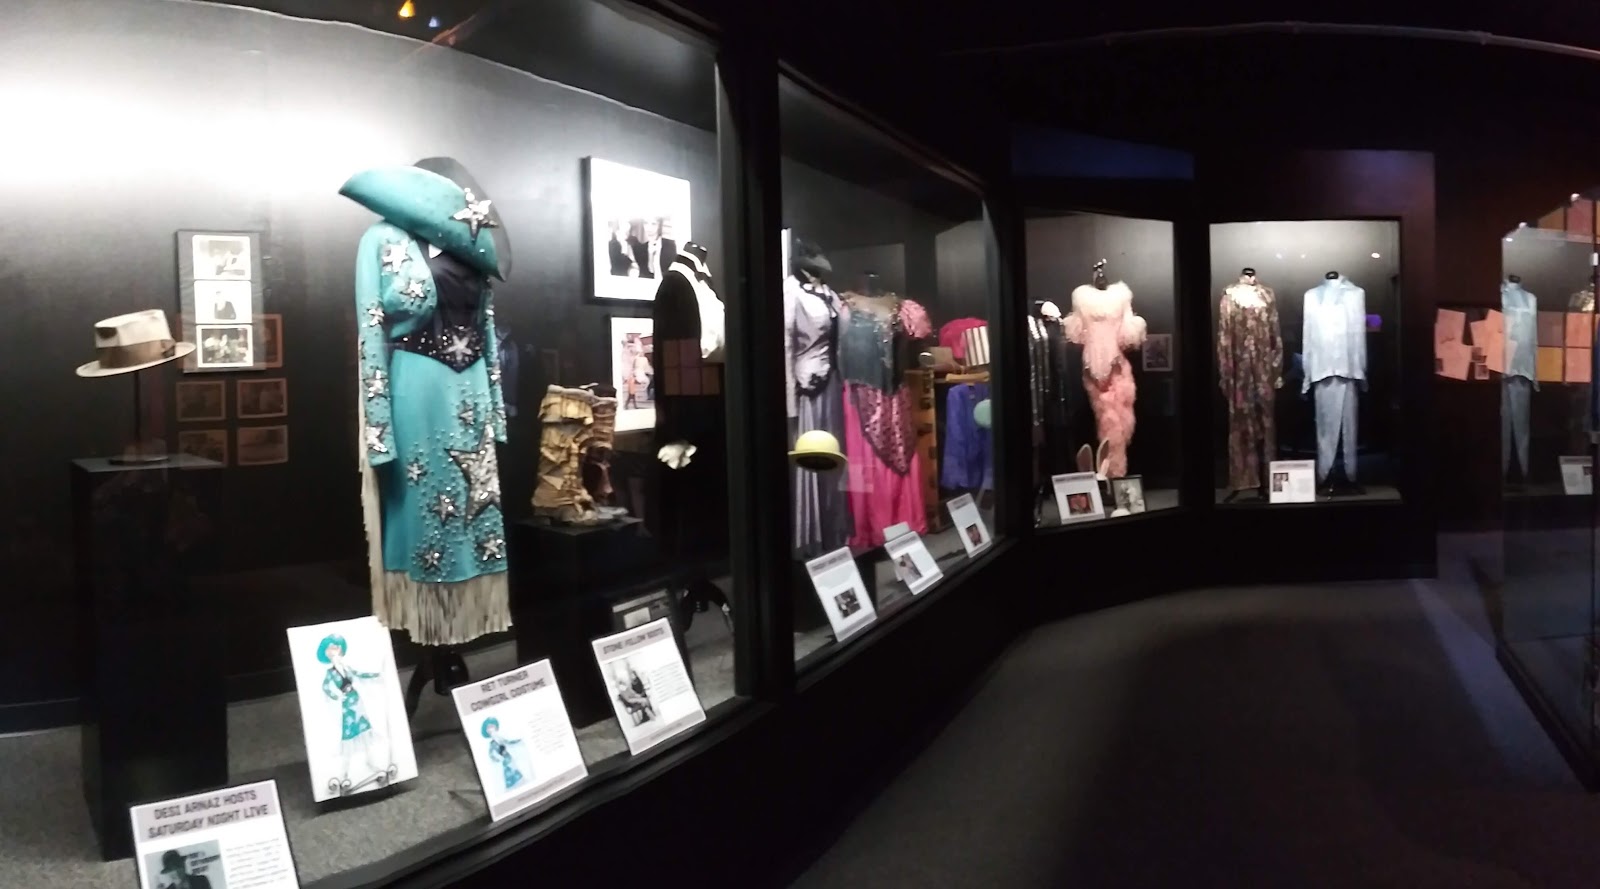 Lucille Ball Desi Arnaz Museum